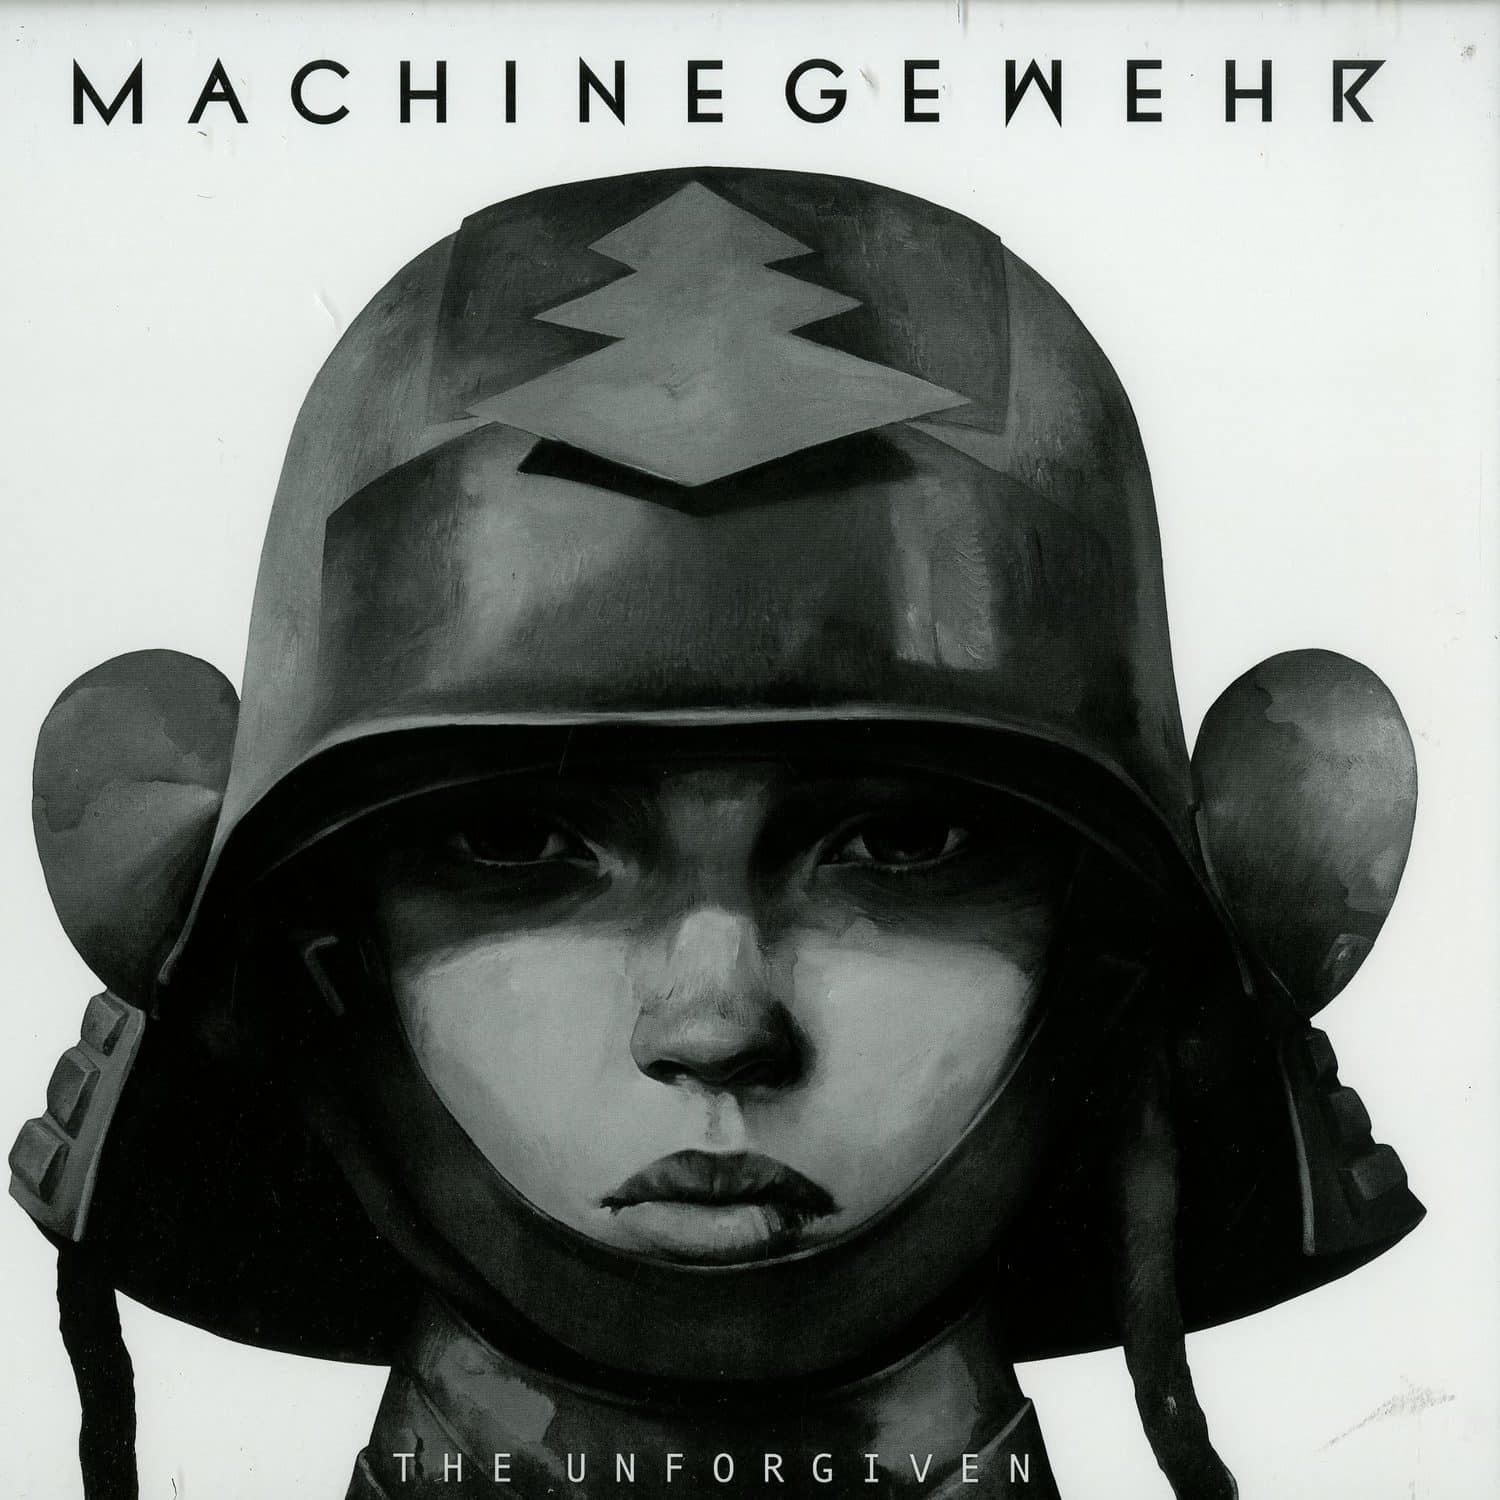 Machinegewehr - THE UNFORGIVEN